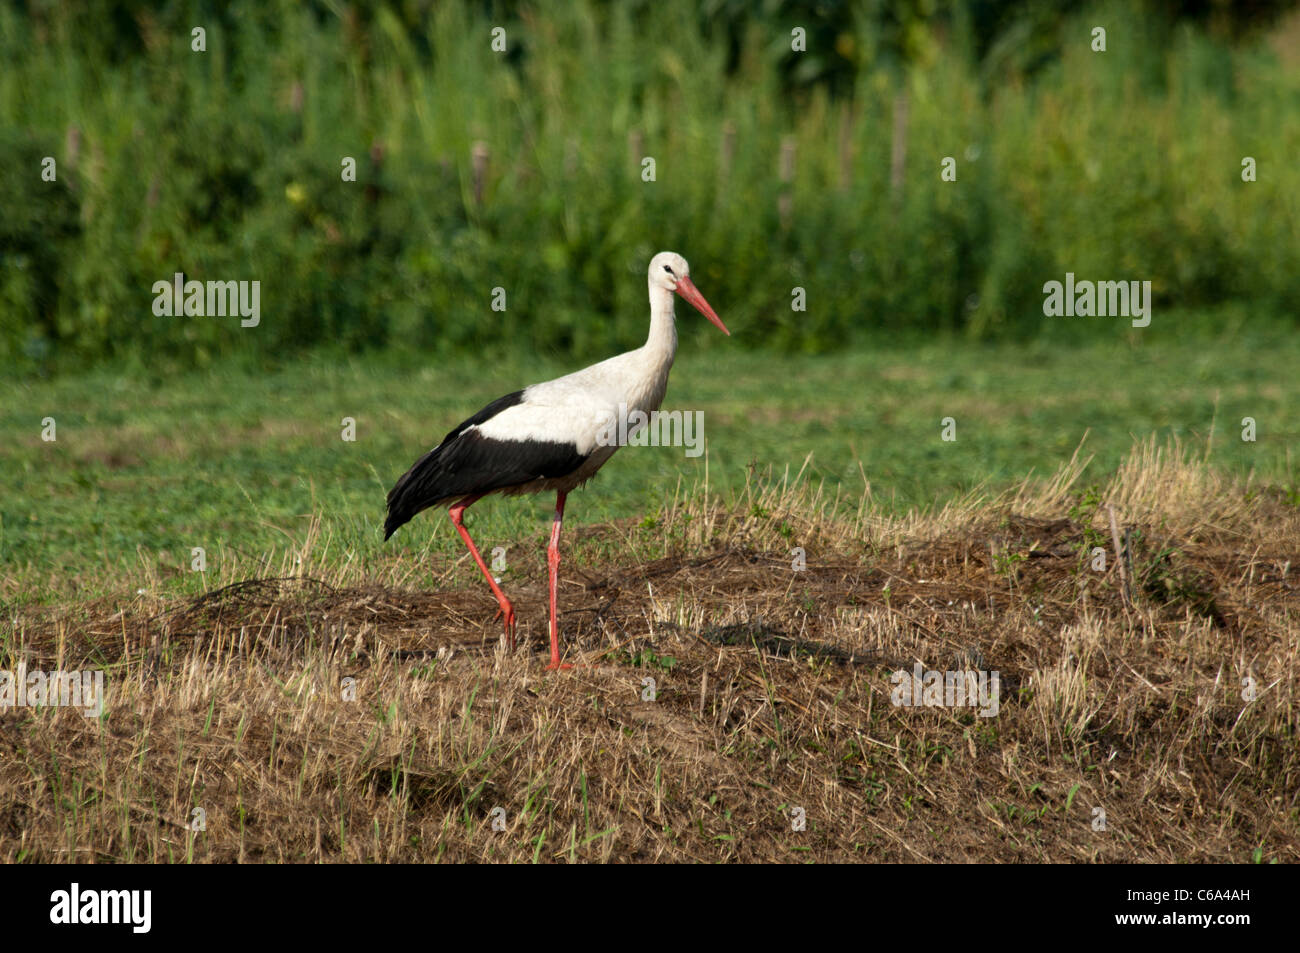 Cicogna bianca in cerca di cibo nel salvare le pianure alluvionali vicino Cigoc in Lonjsko polje Il parco di natura in Croazia. Weißstorch auf Acker. Foto Stock